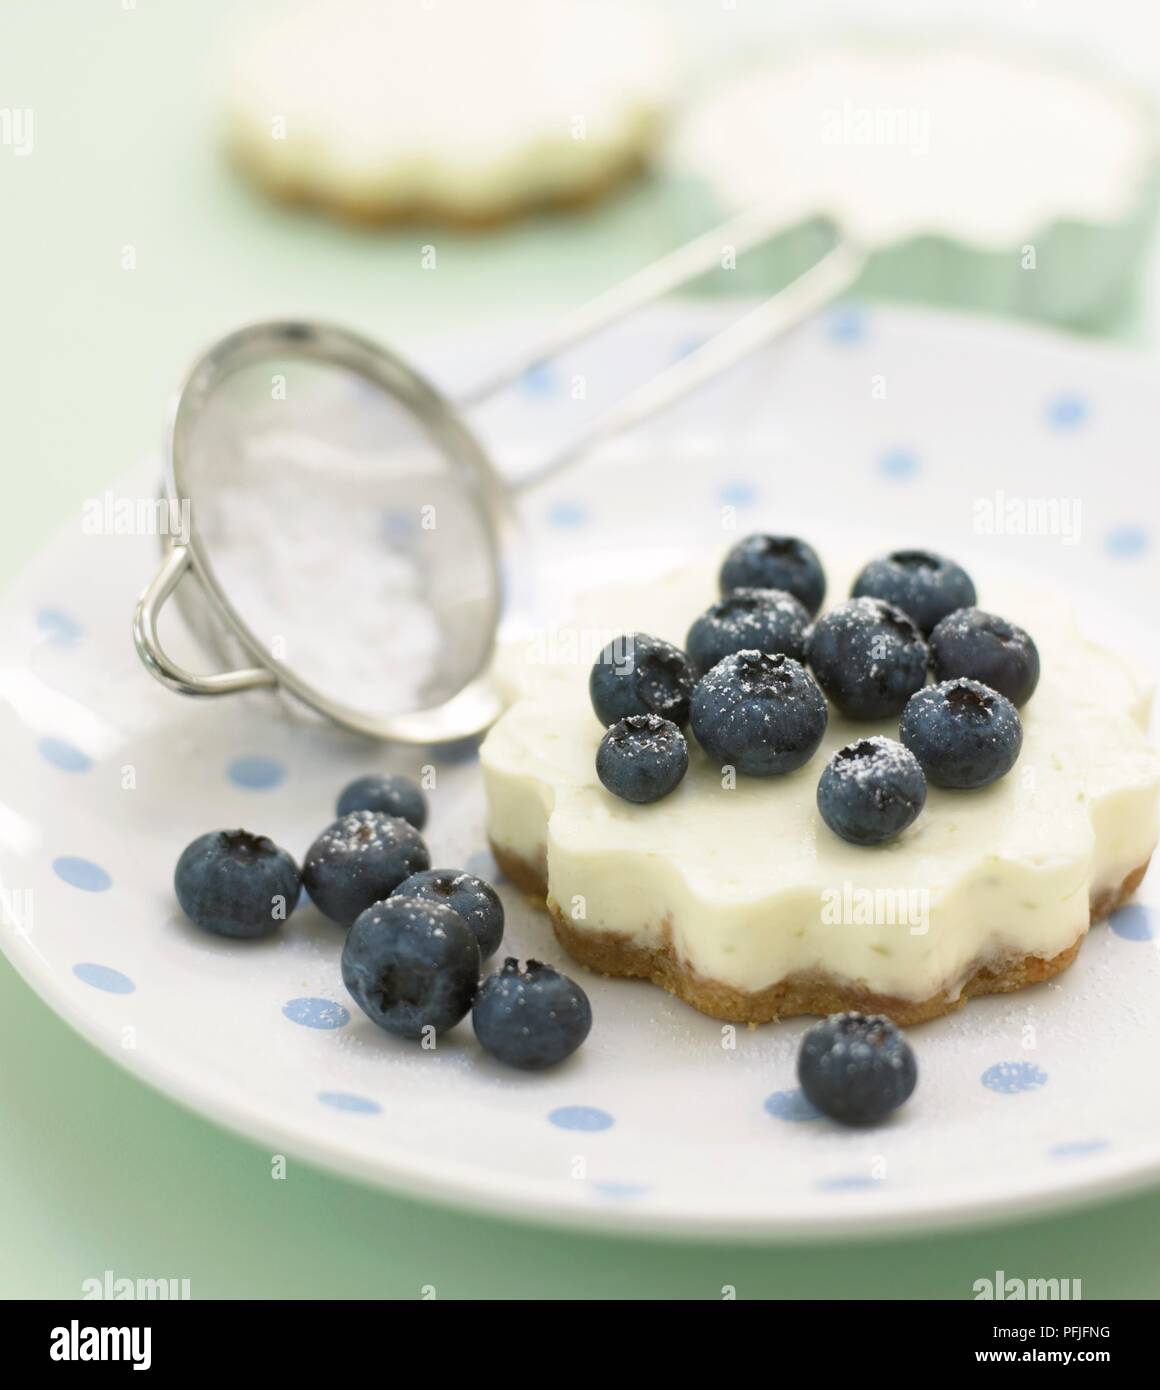 Blueberry cheesecake bestäubt mit Puderzucker, auf einer Platte mit einem kleinen Sieb Stockfoto